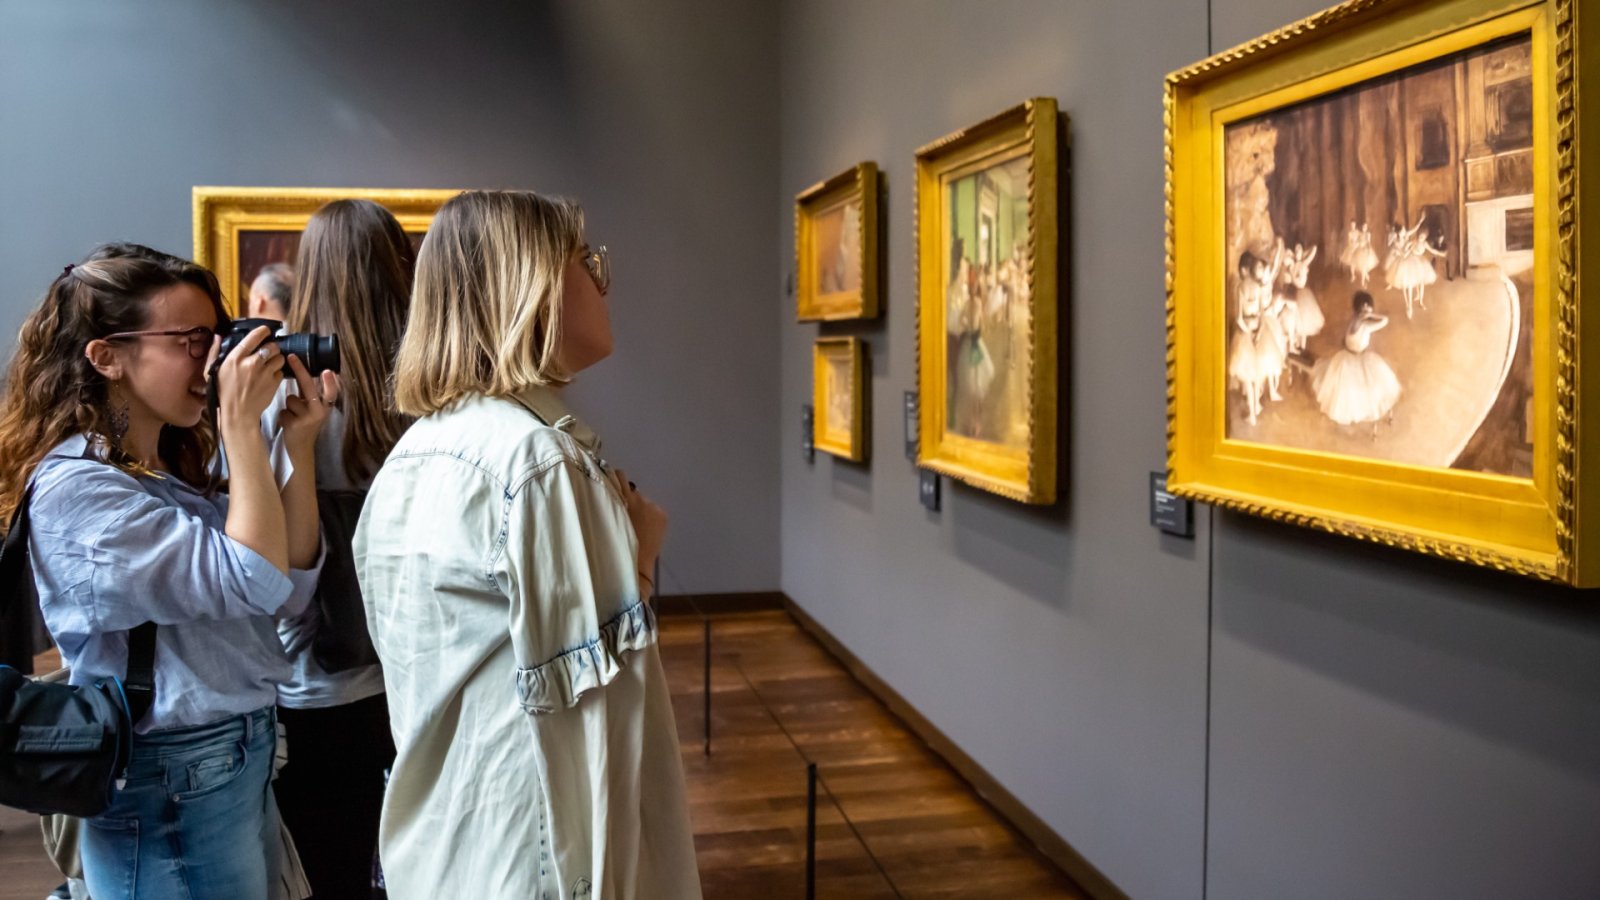 Deze beroemde kunstwerken uit Musée d'Orsay worden uiteindelijk teruggegeven aan de erfgenamen